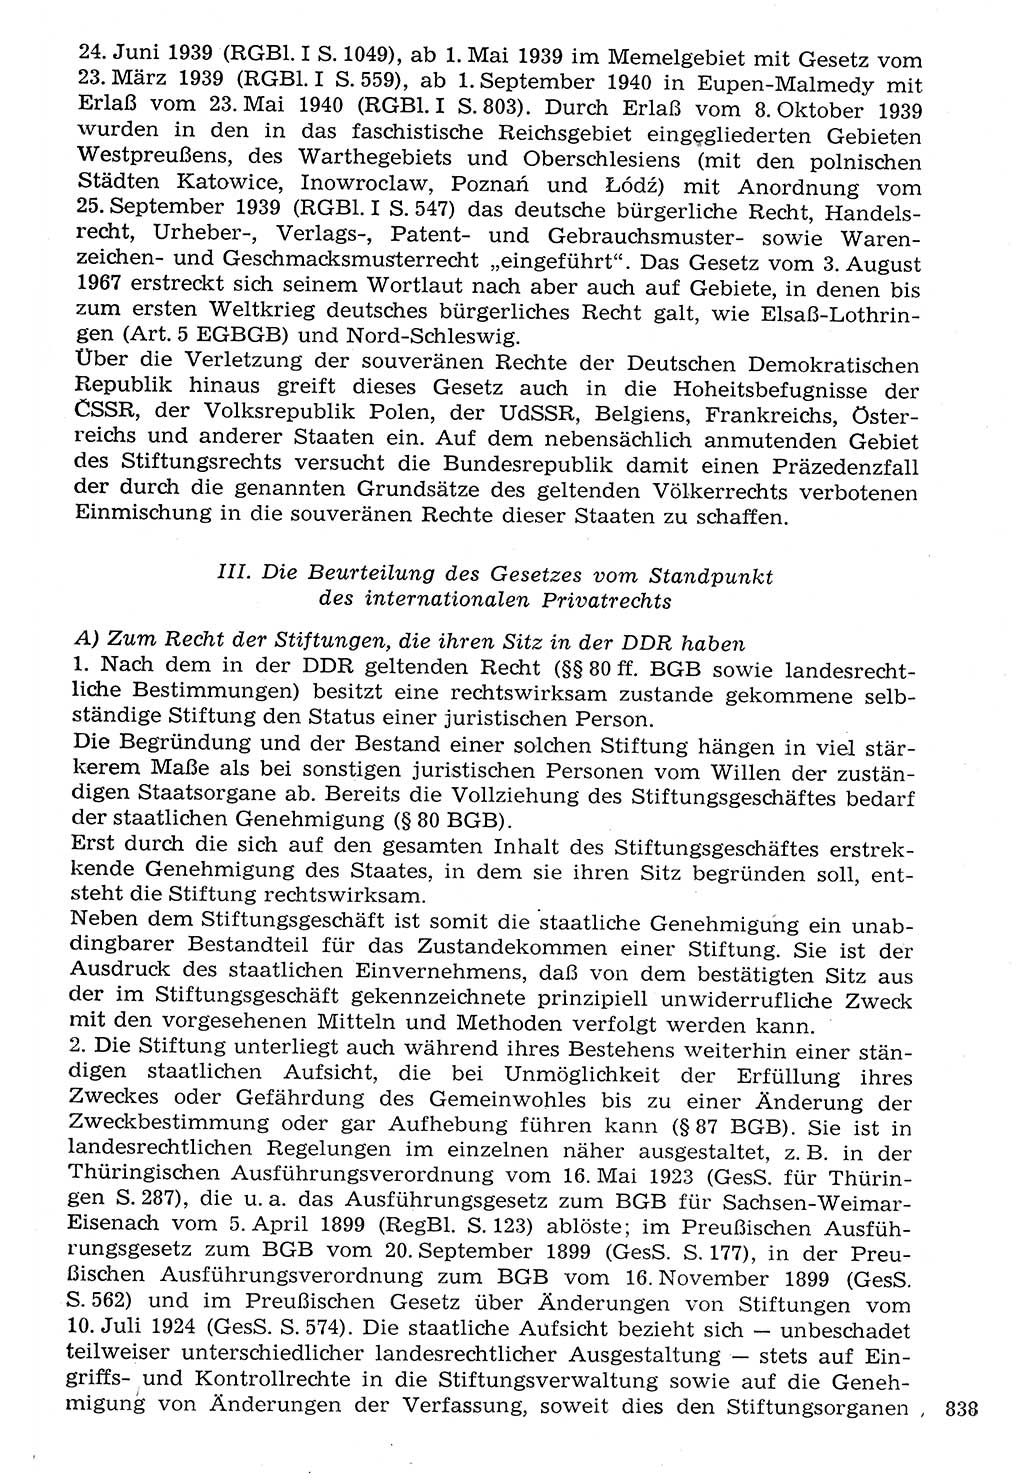 Staat und Recht (StuR), 17. Jahrgang [Deutsche Demokratische Republik (DDR)] 1968, Seite 838 (StuR DDR 1968, S. 838)